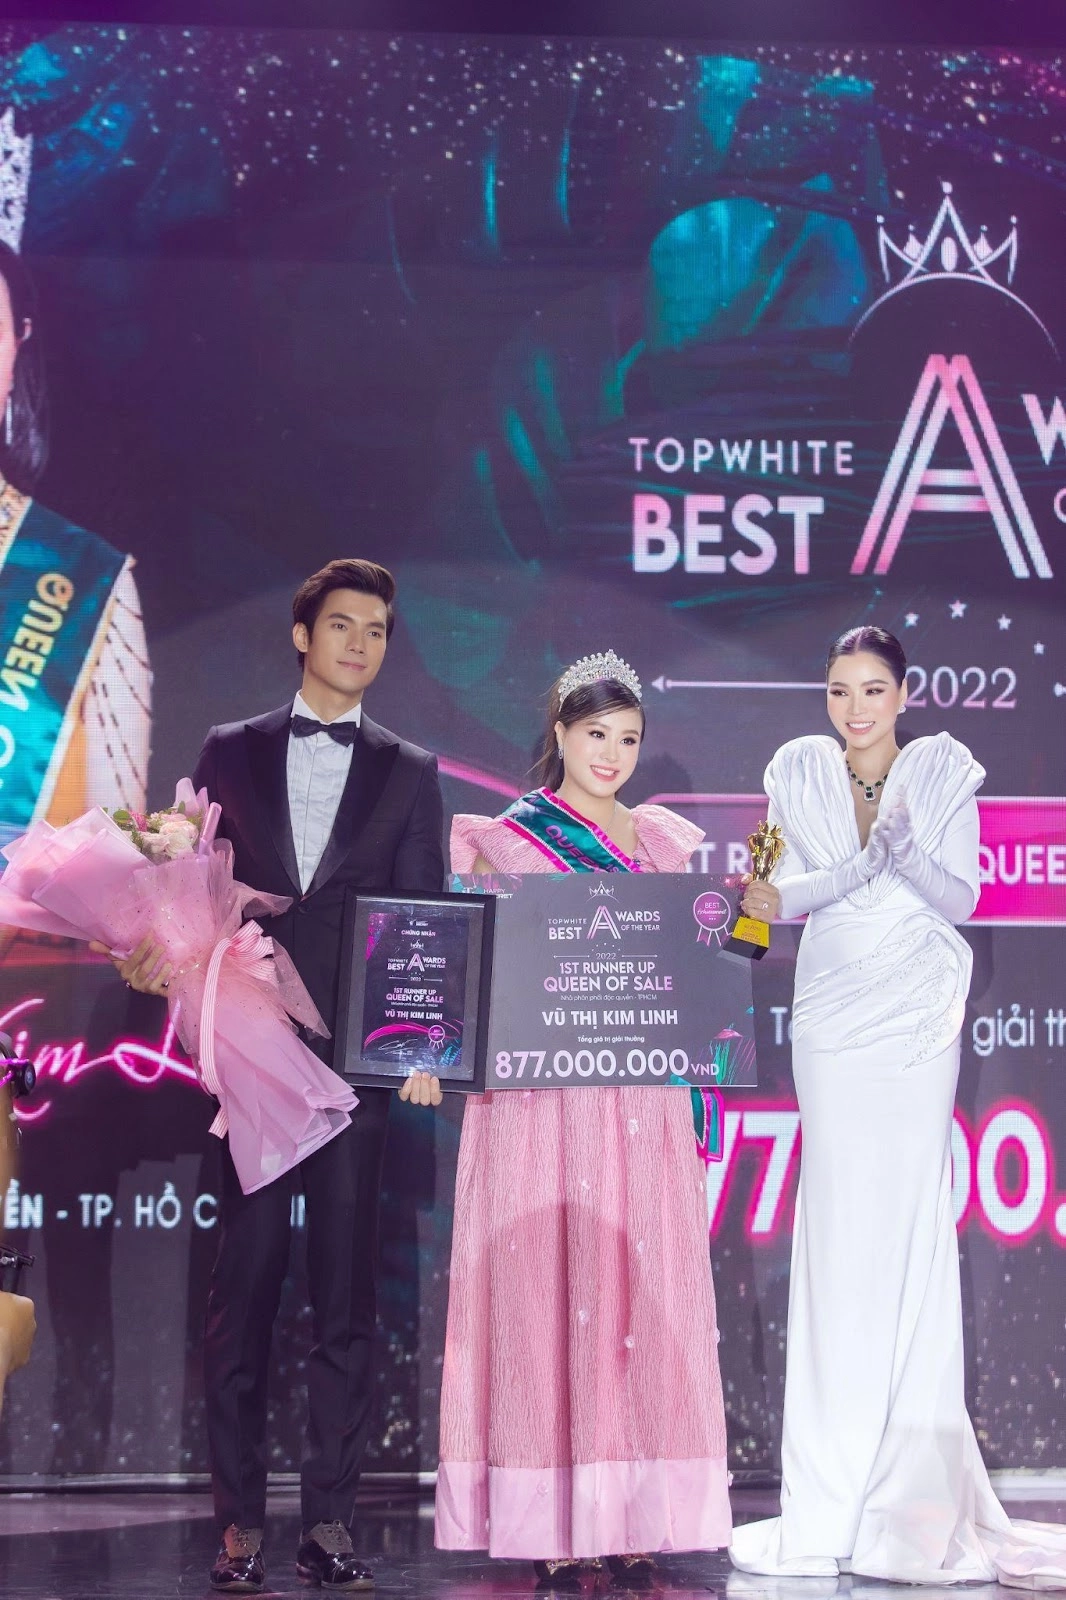 Top white best awards of the year 2022 cô nàng lọ lem vũ thị kim linh đạt danh hiệu á hoàng sale 1 - 1